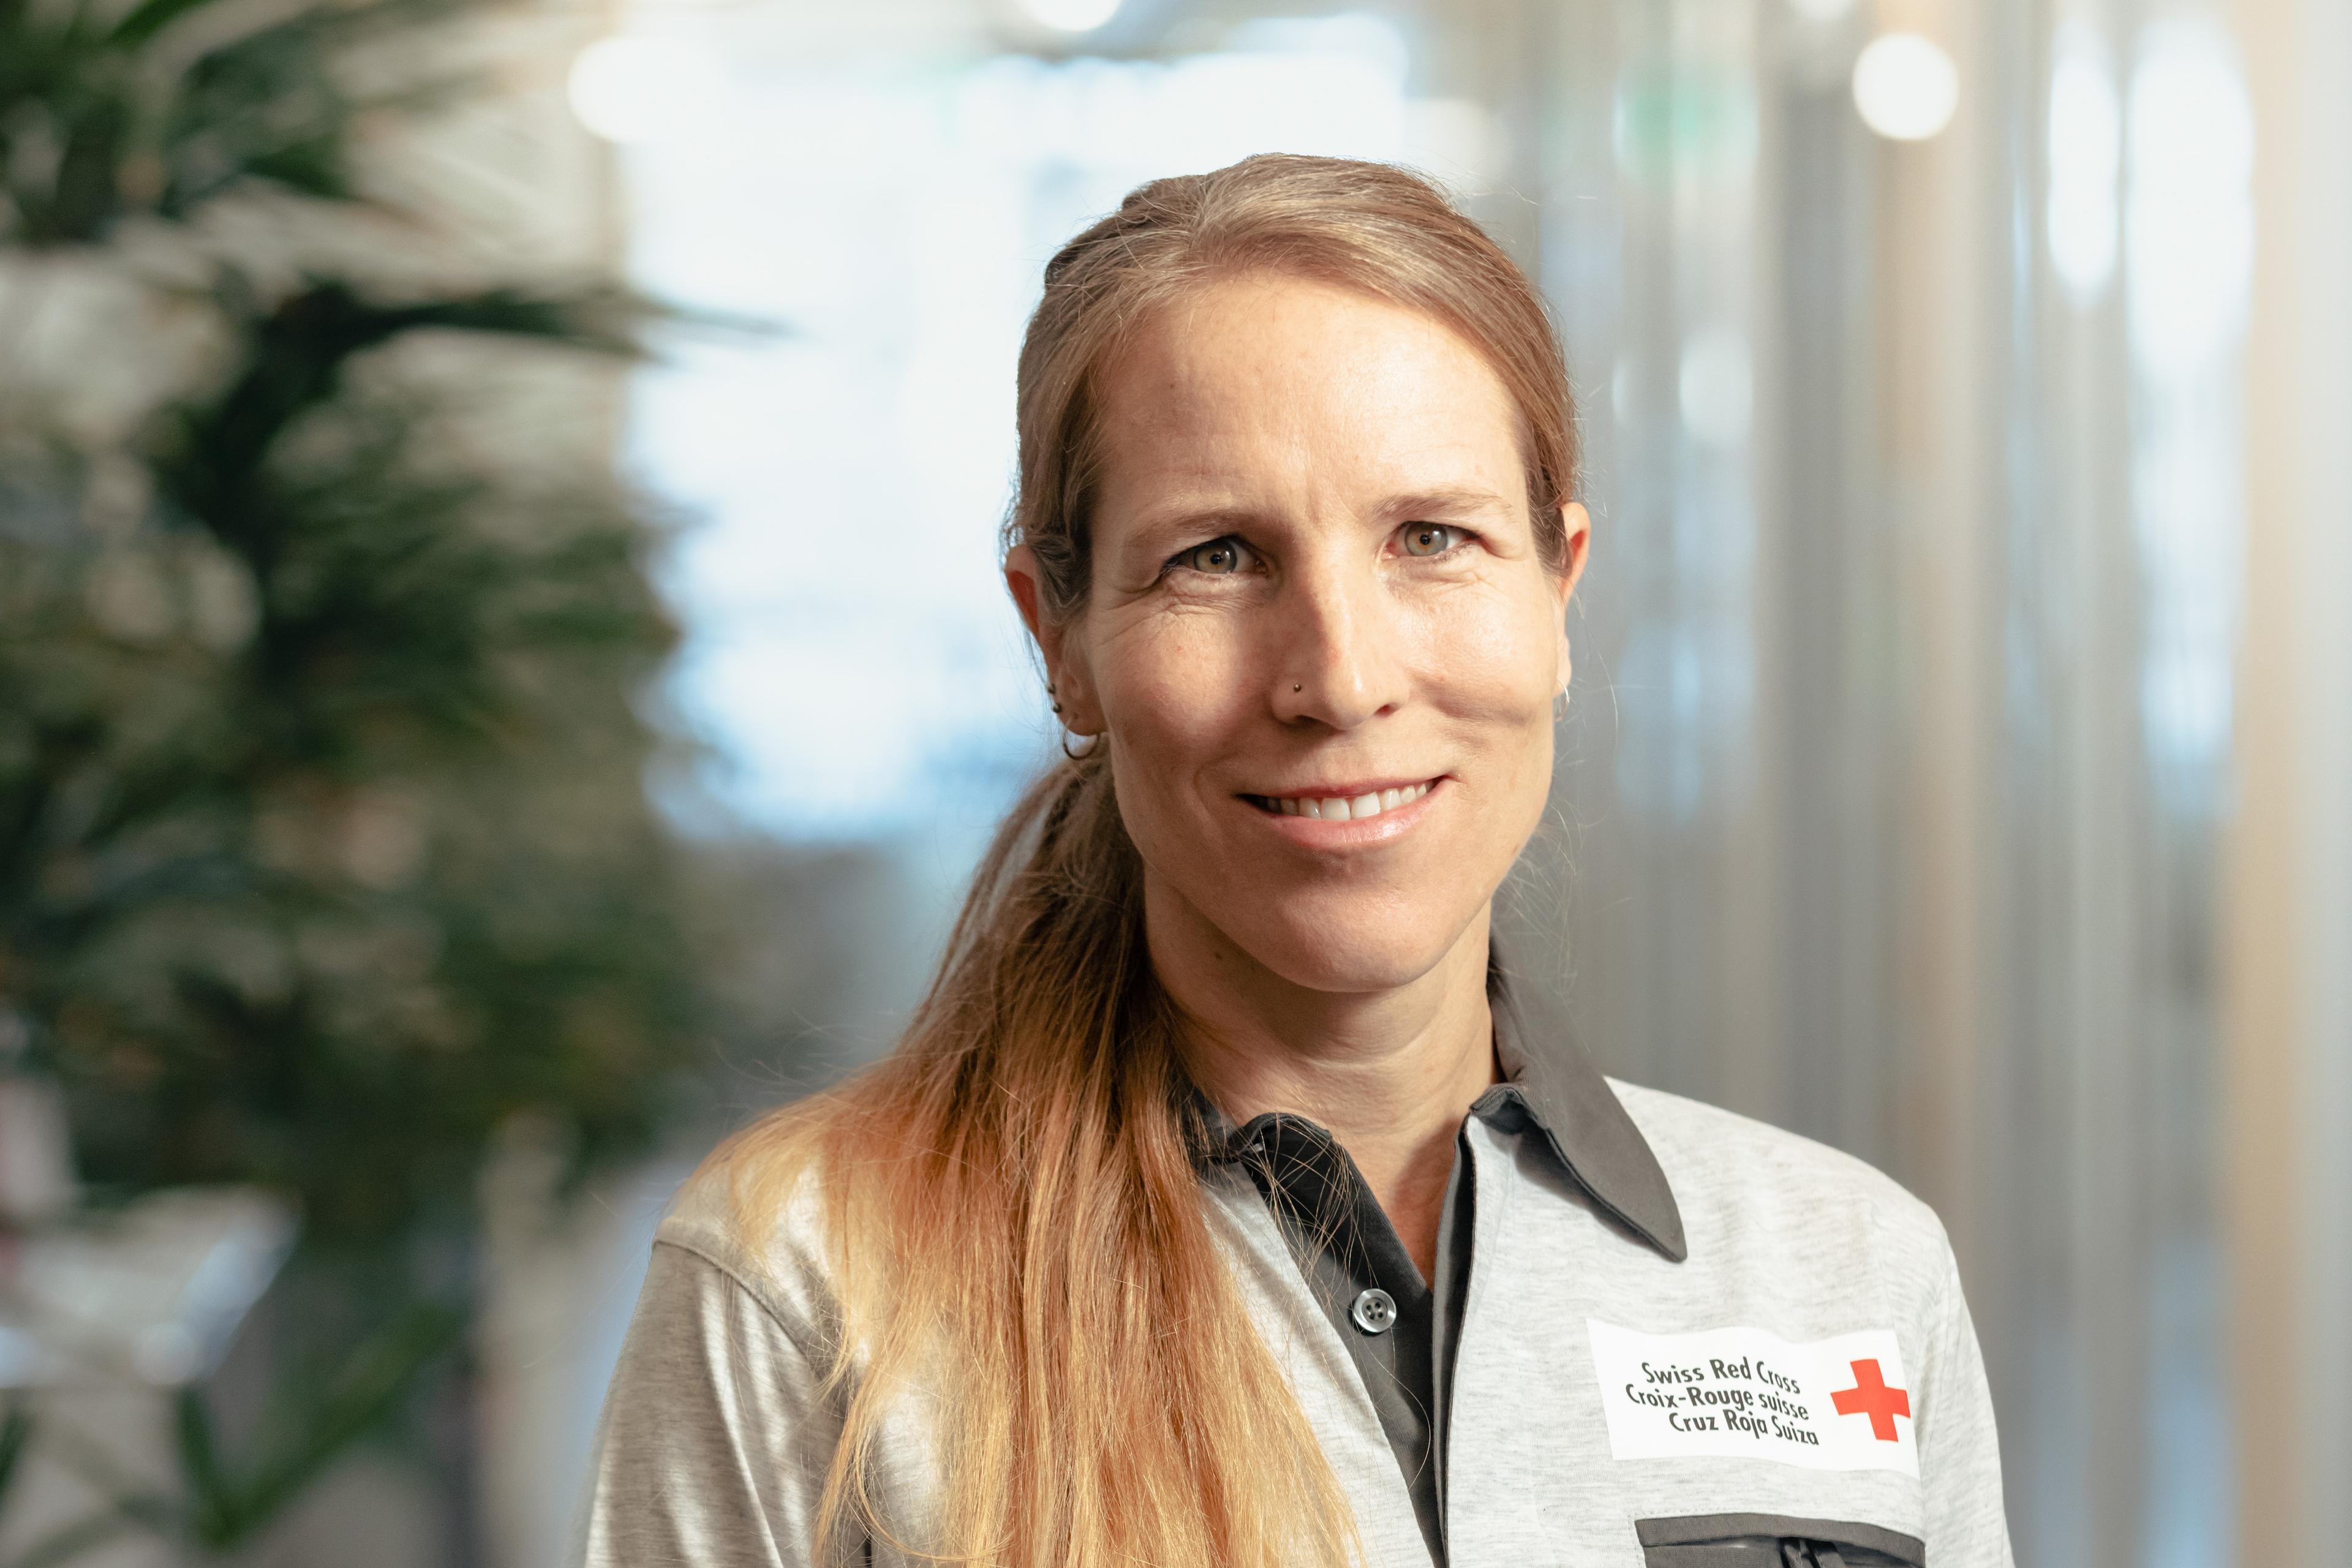 Ritratto di Yvonne Affolter. Indossa una polo con il logo della Croce Rossa Svizzera.